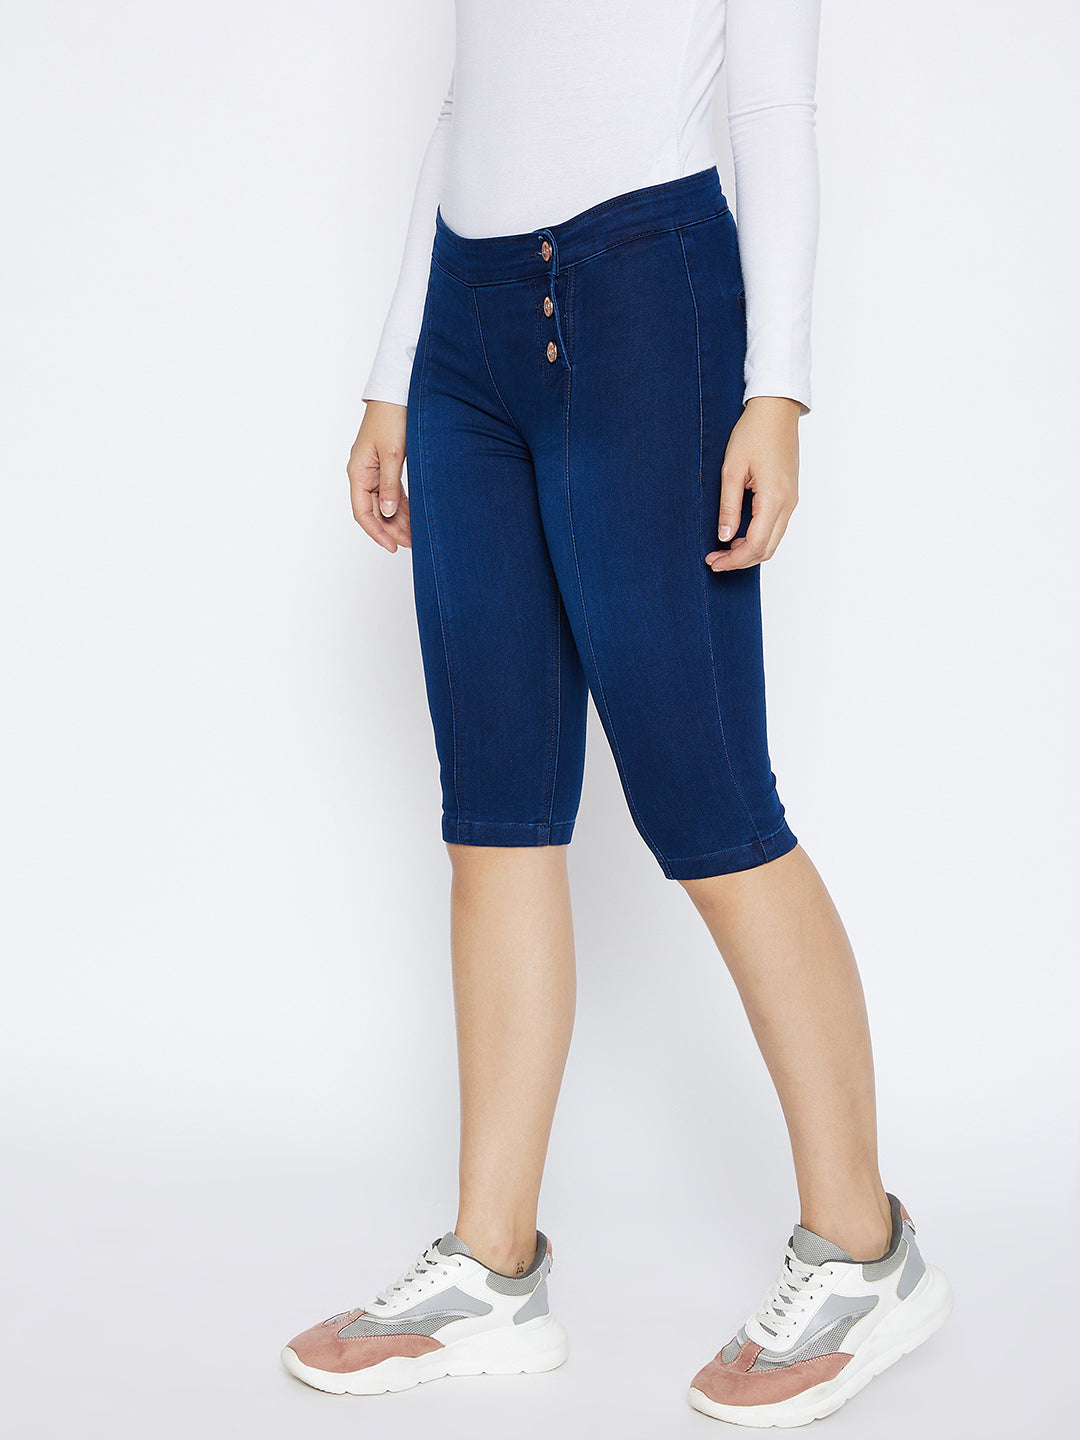 Navy Blue Slim Fit Denim Shorts - Women Shorts